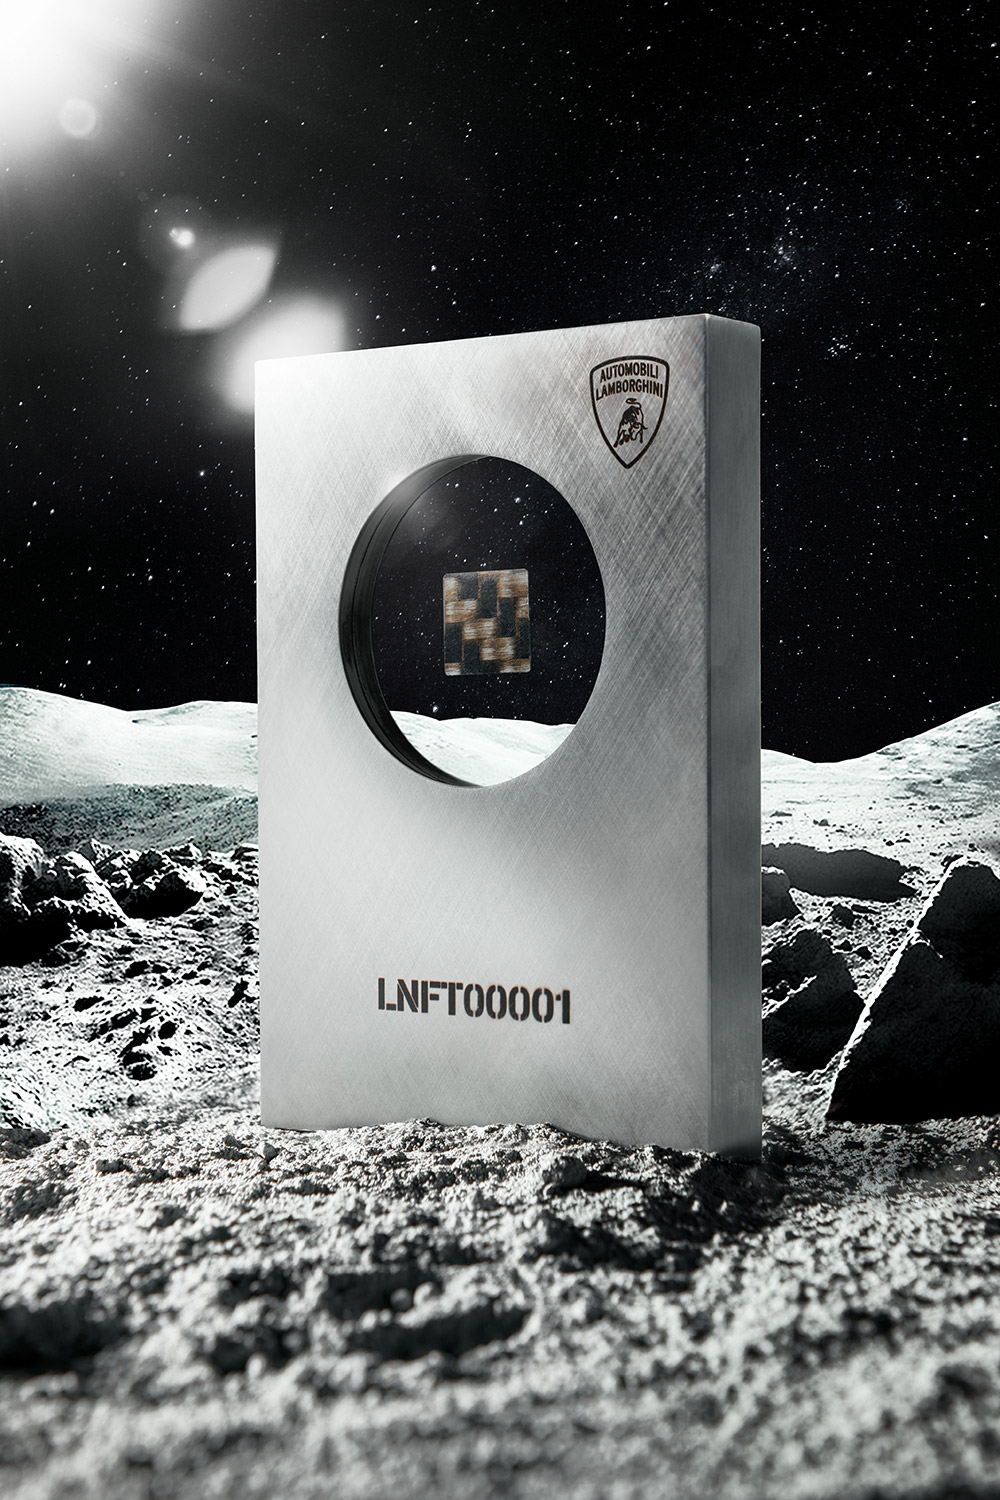 Lamborghini Space Key NFT